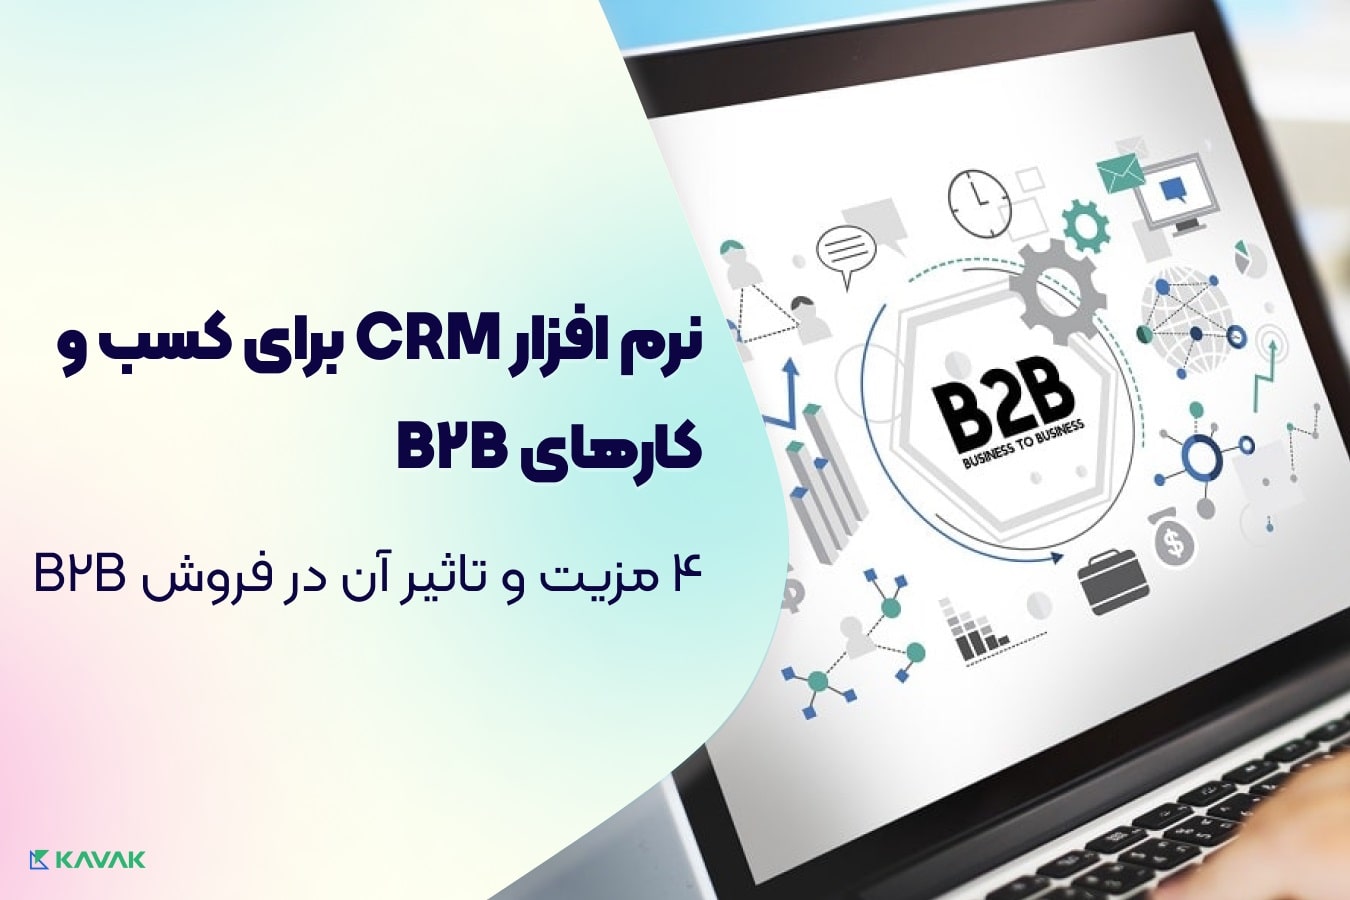 CRM برای کسب و کارهای B2B